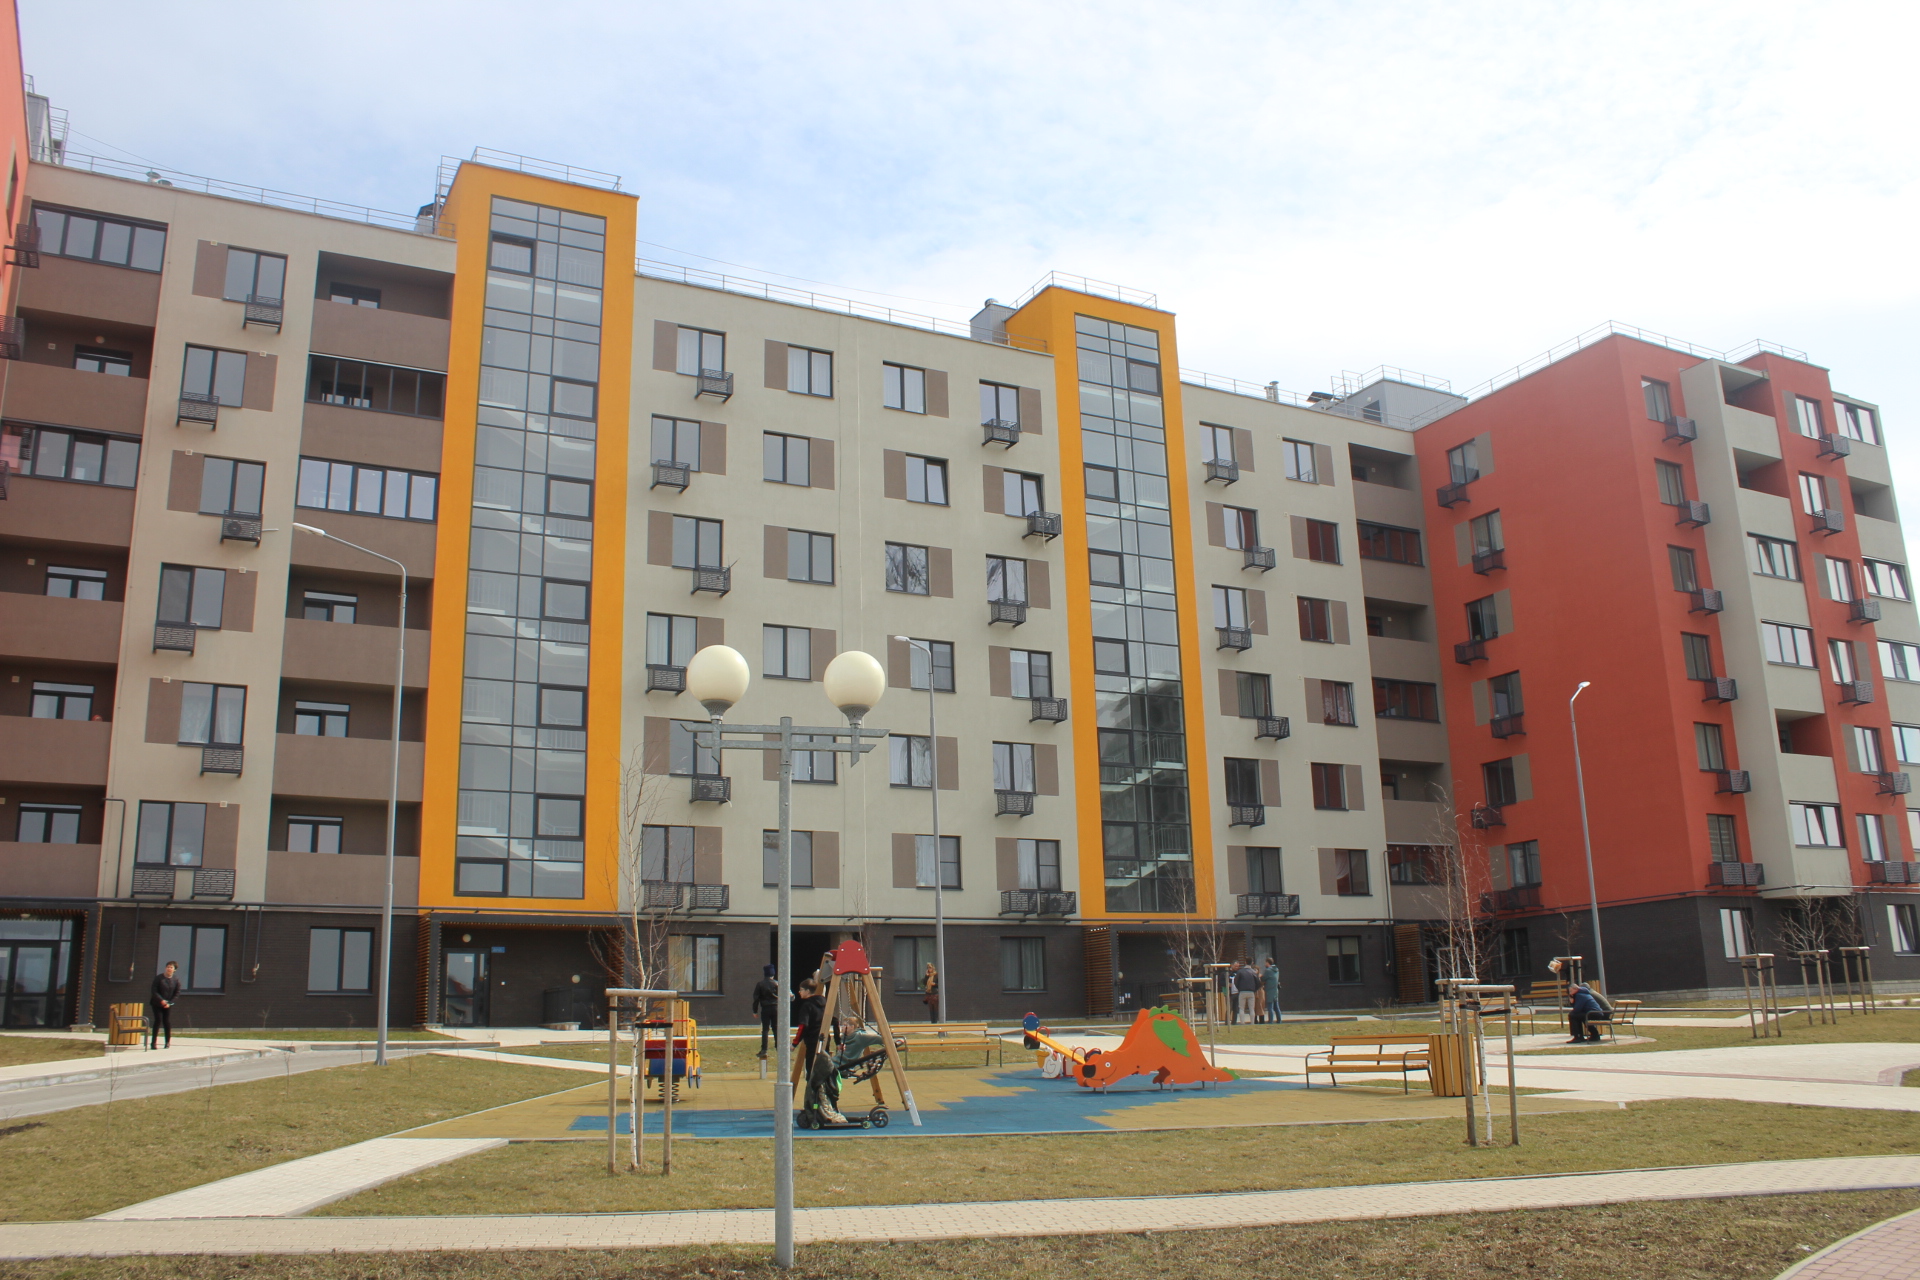 9 семей вынужденно покинувшие приграничную Журавлёвку сегодня получили квартиры